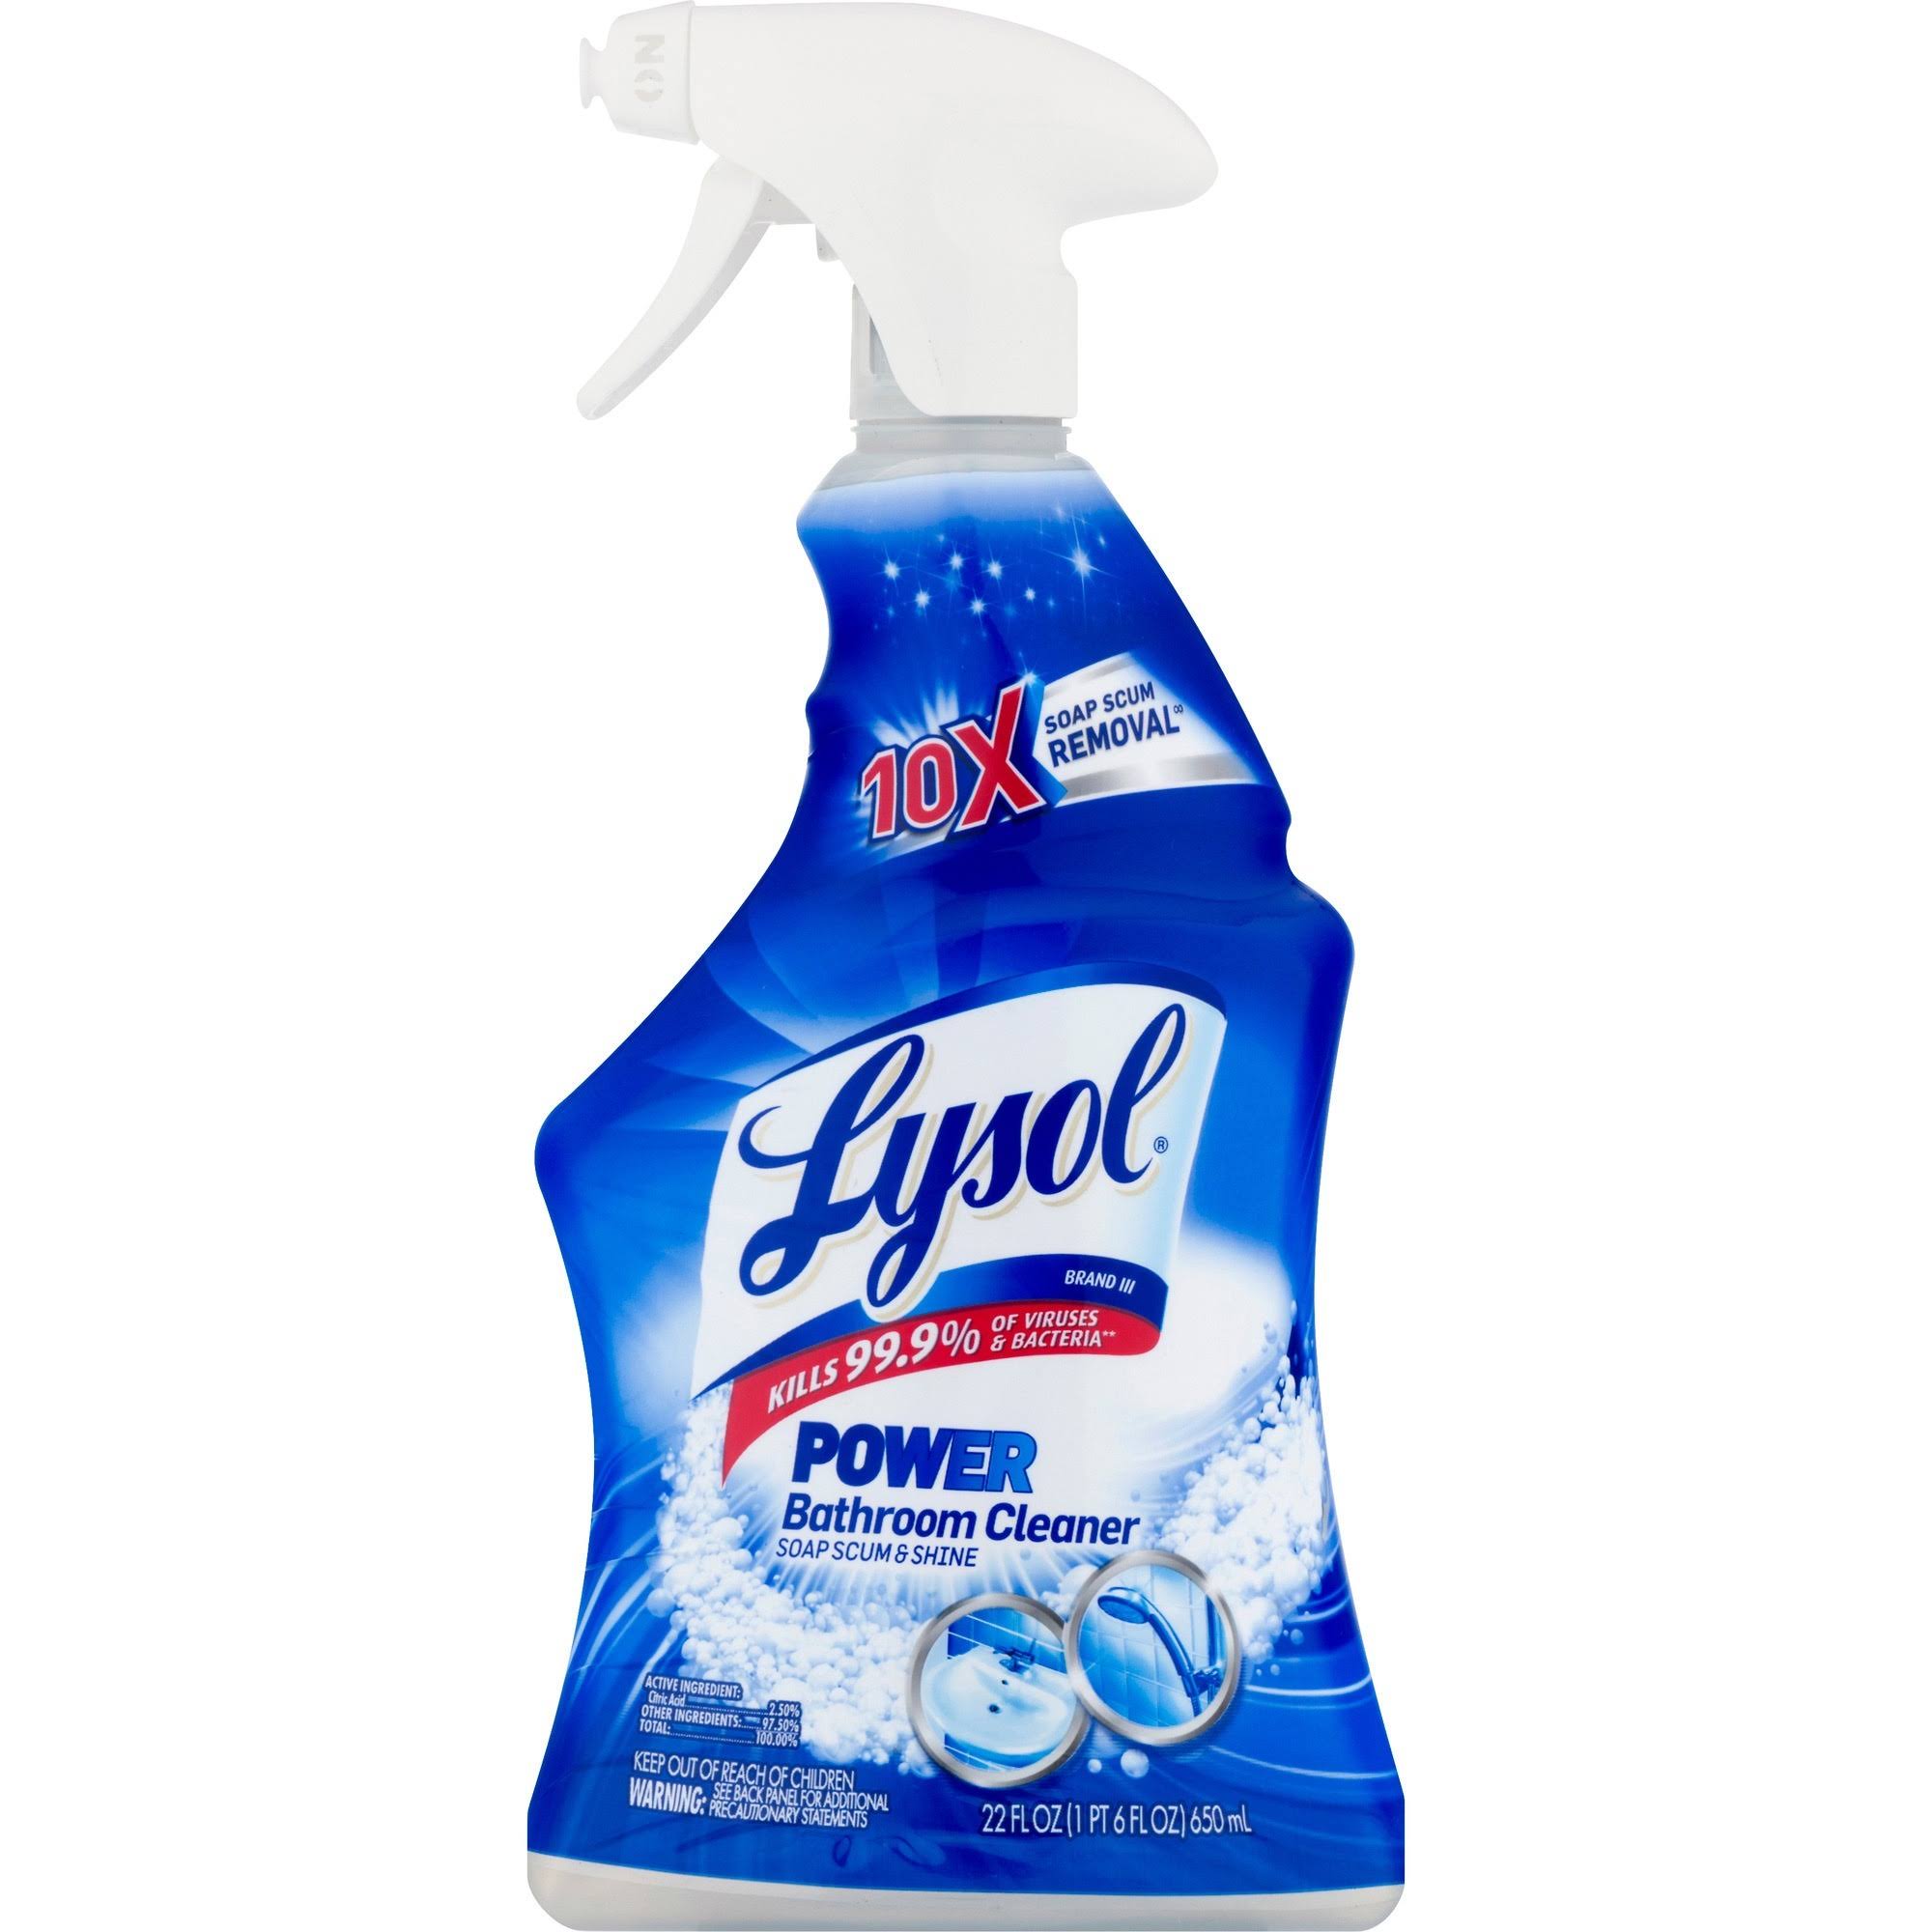 Lysol Bathroom Cleaner, Power - 22 fl oz